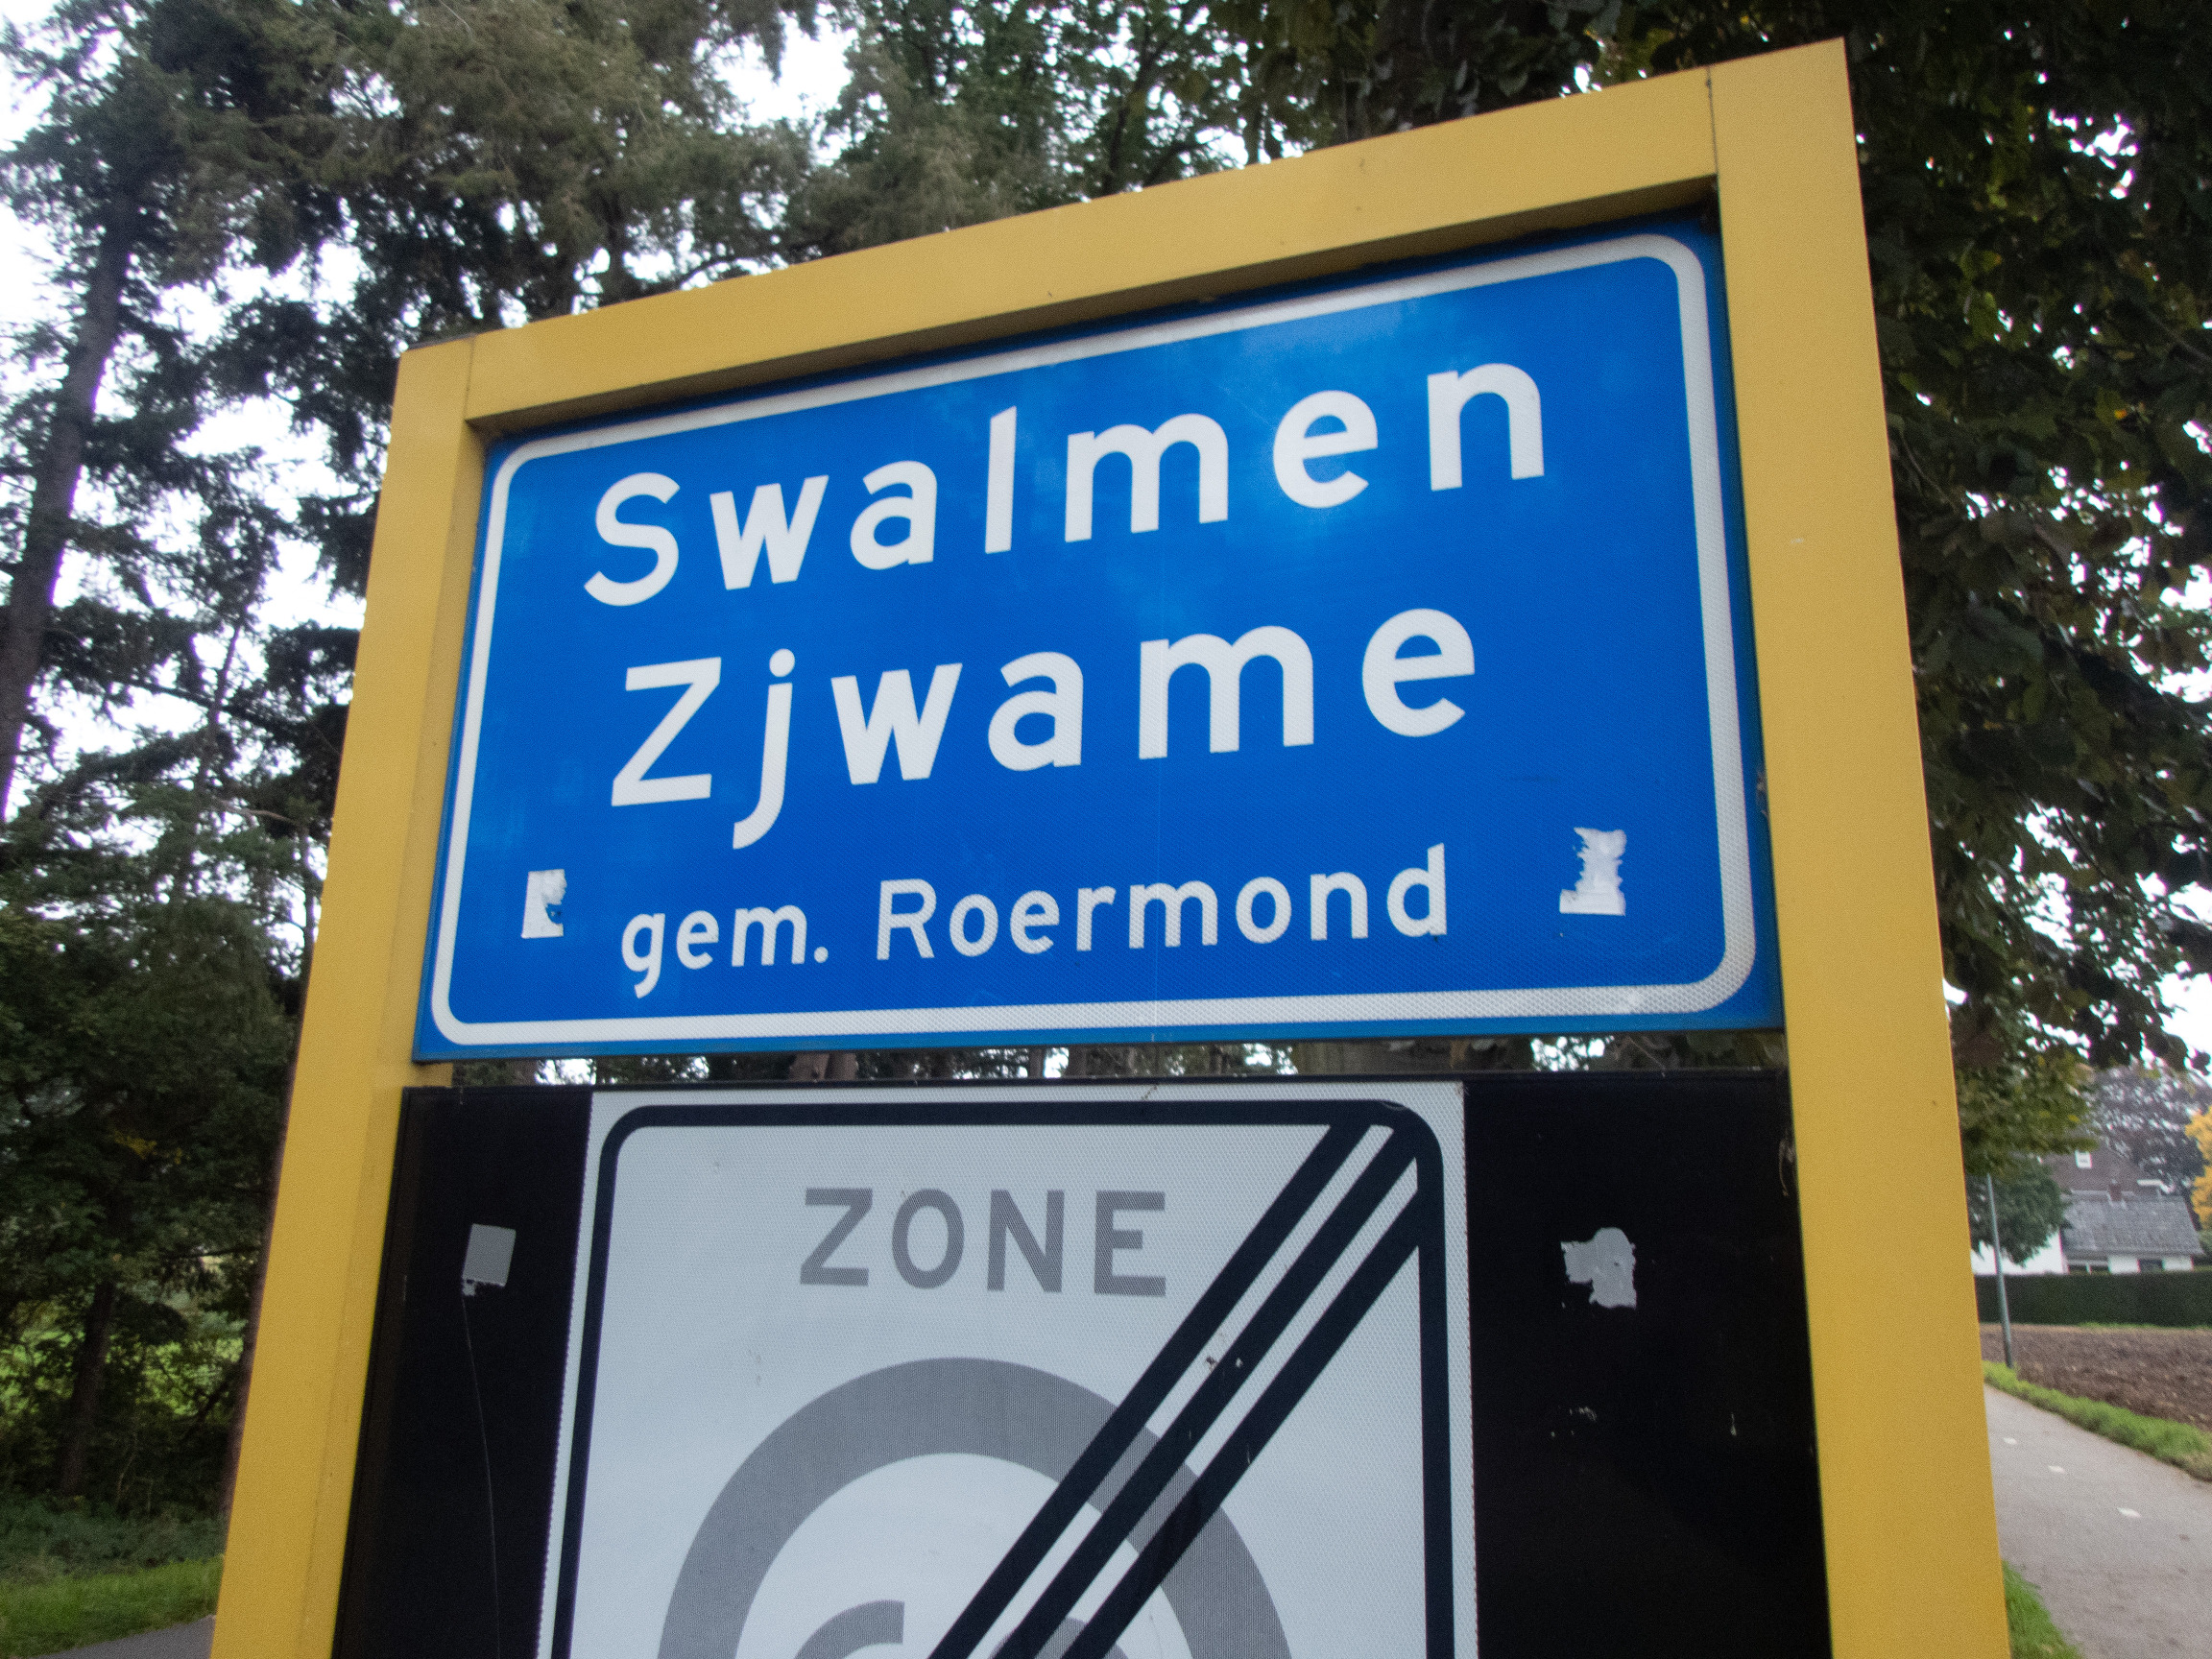 Swalmen